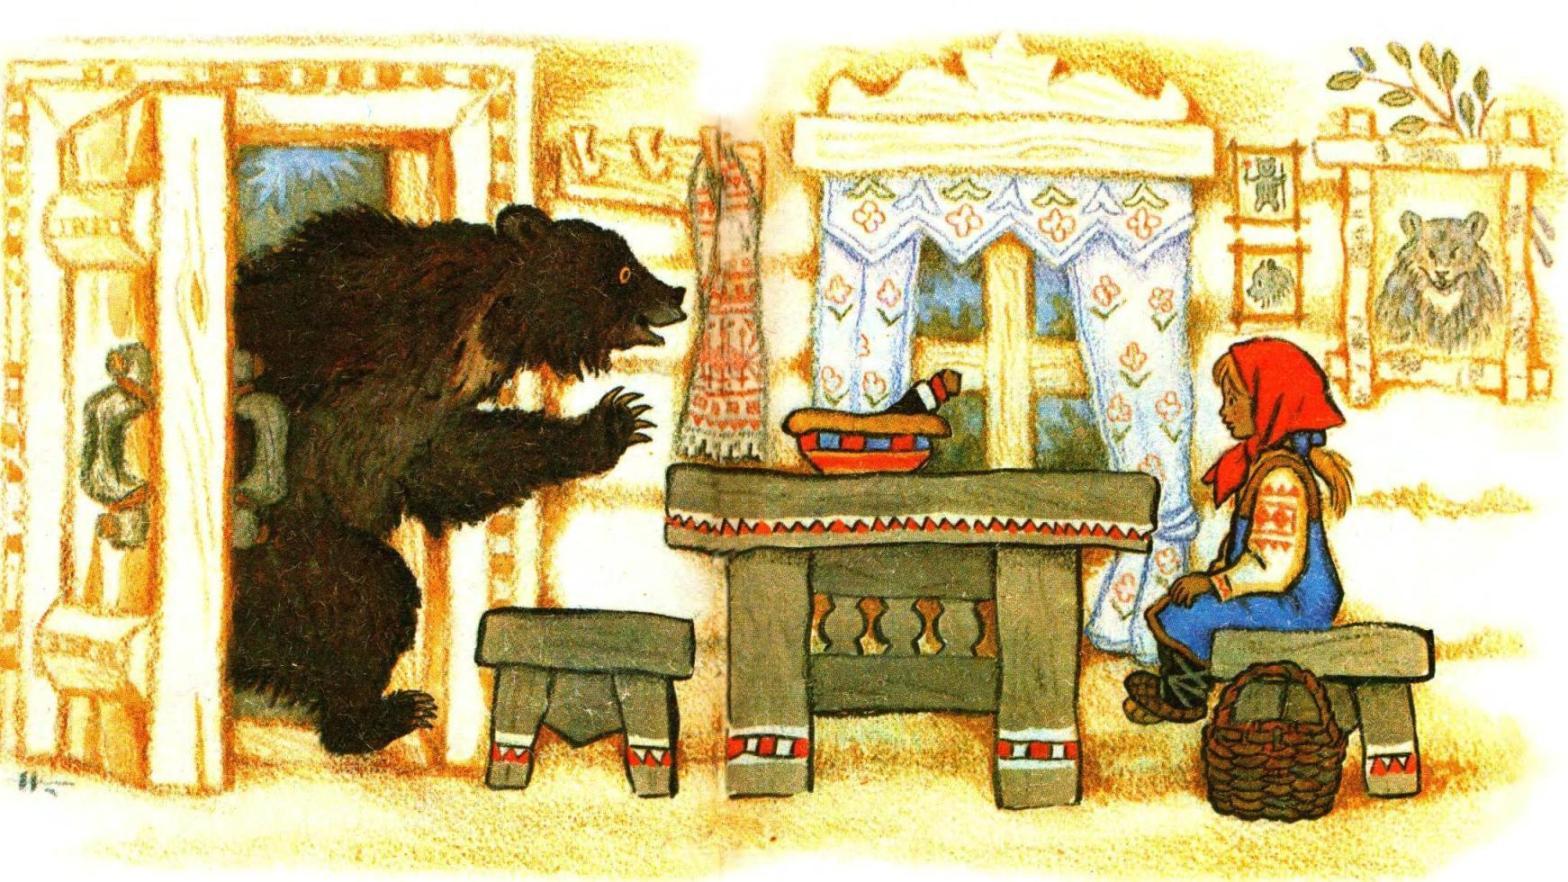 Маша и медведь. Русские народные сказки